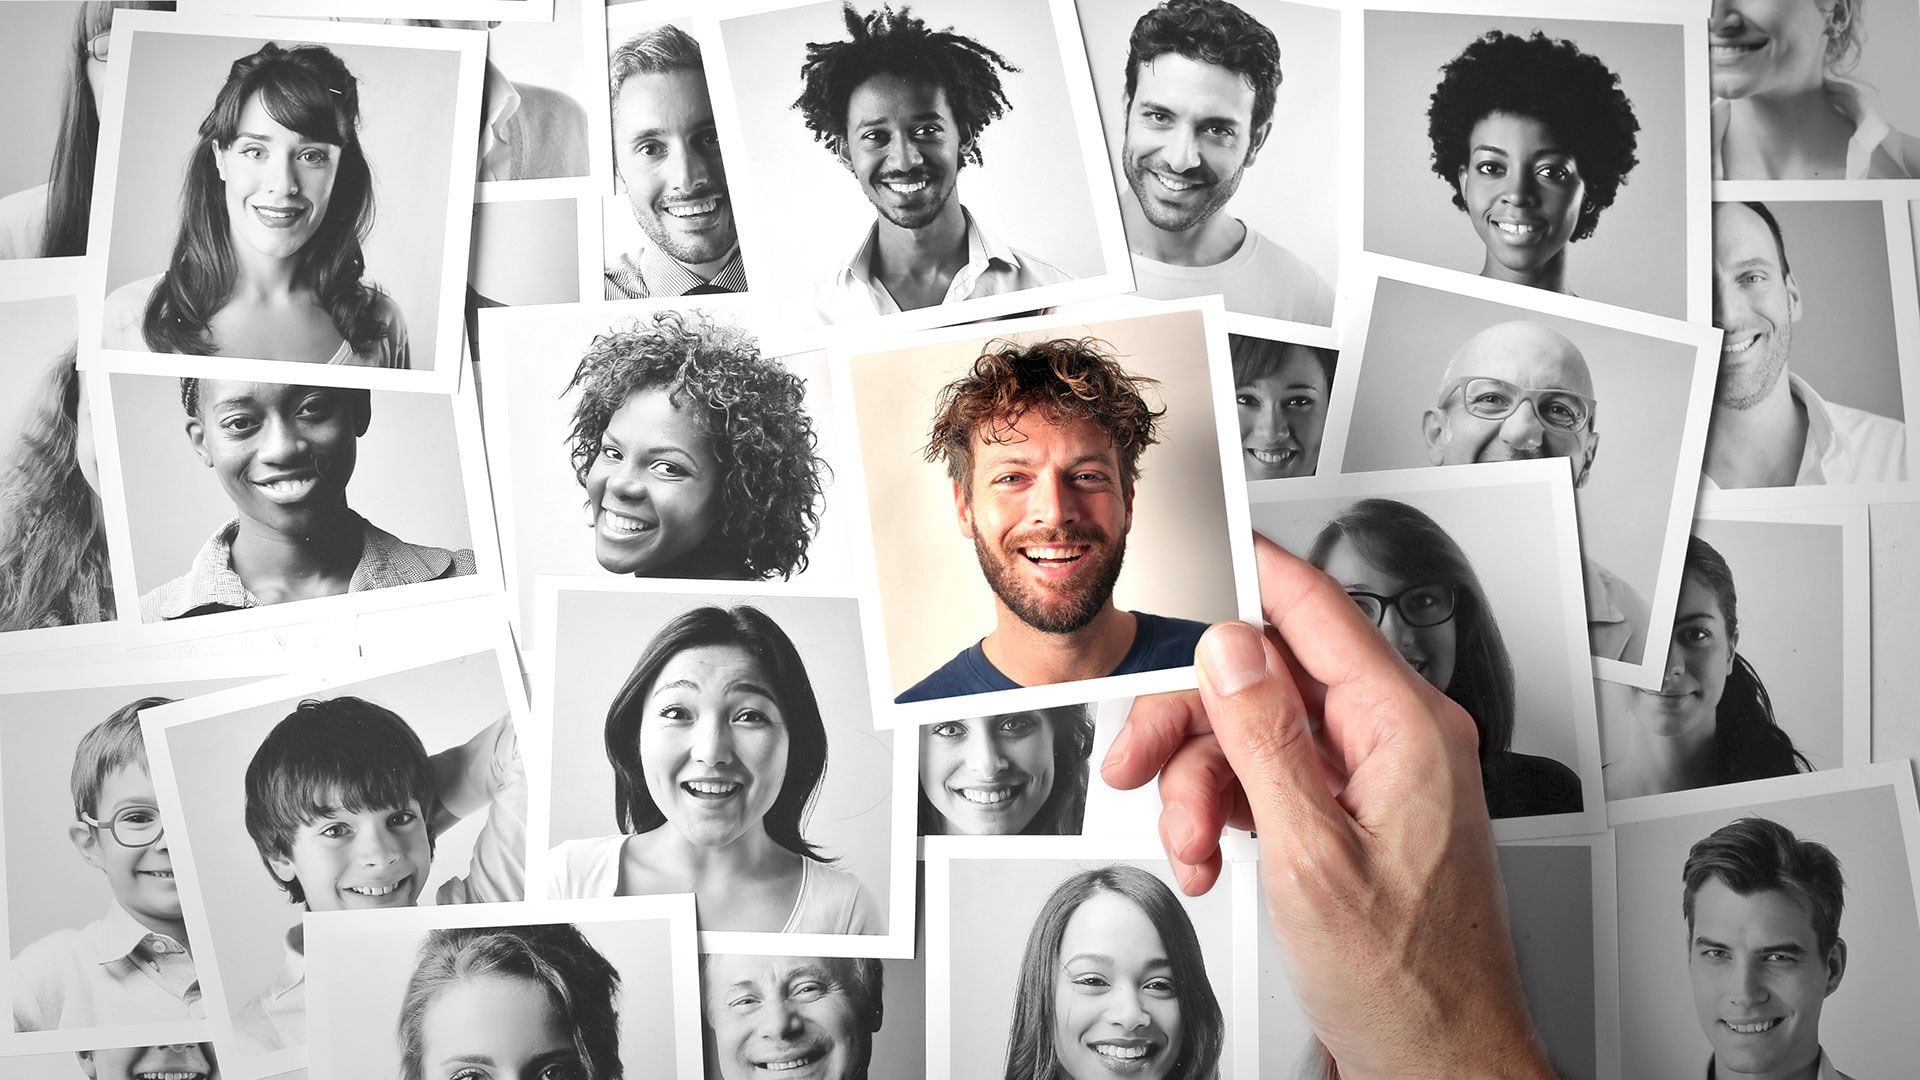 La empatía y la ansiedad están relacionadas con las habilidades de reconocer caras. (Shutterstock)